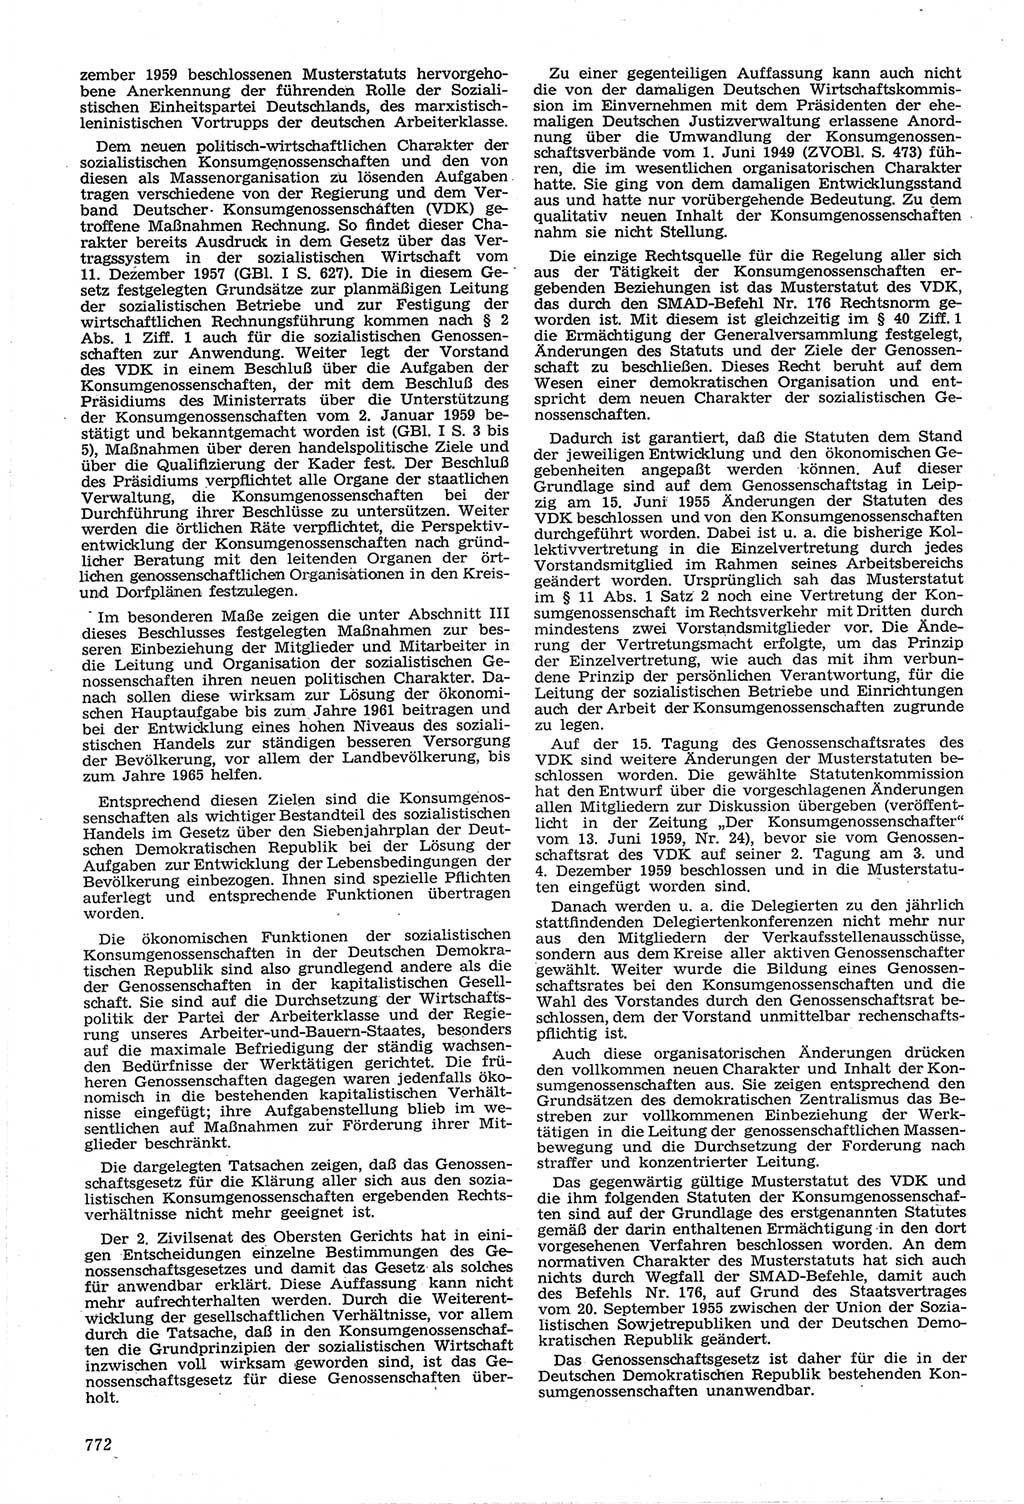 Neue Justiz (NJ), Zeitschrift für Recht und Rechtswissenschaft [Deutsche Demokratische Republik (DDR)], 14. Jahrgang 1960, Seite 772 (NJ DDR 1960, S. 772)